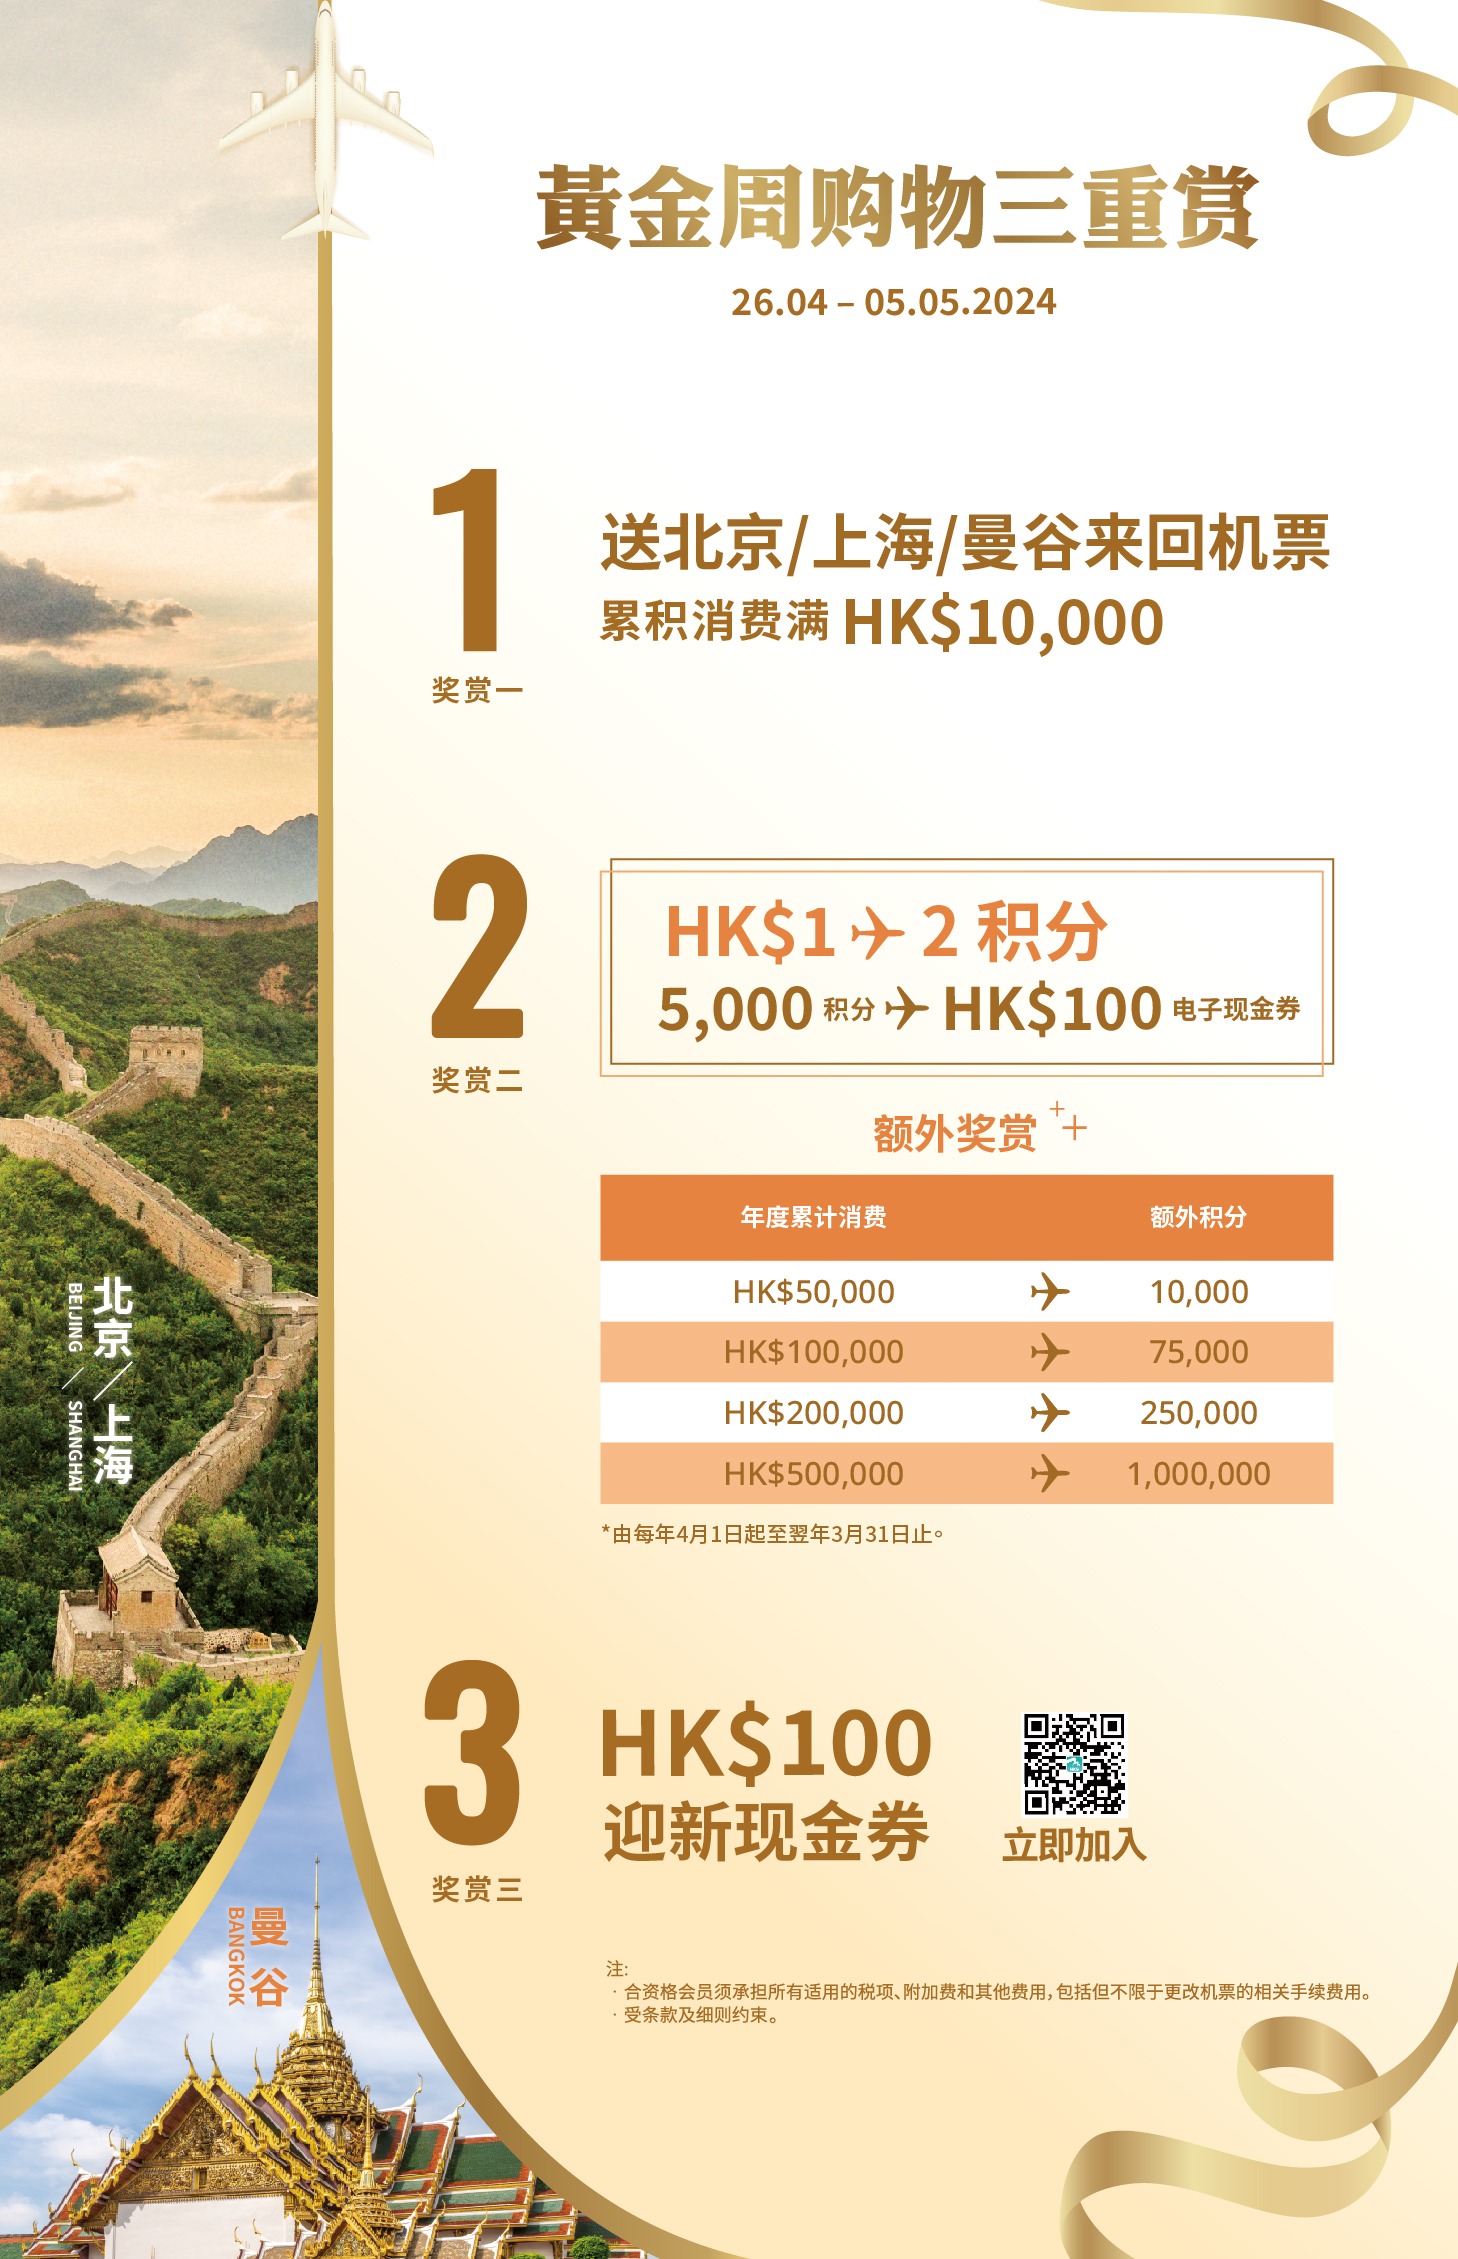 香港国际机场为「HKairport Rewards」会员推出黄金周三重奖赏